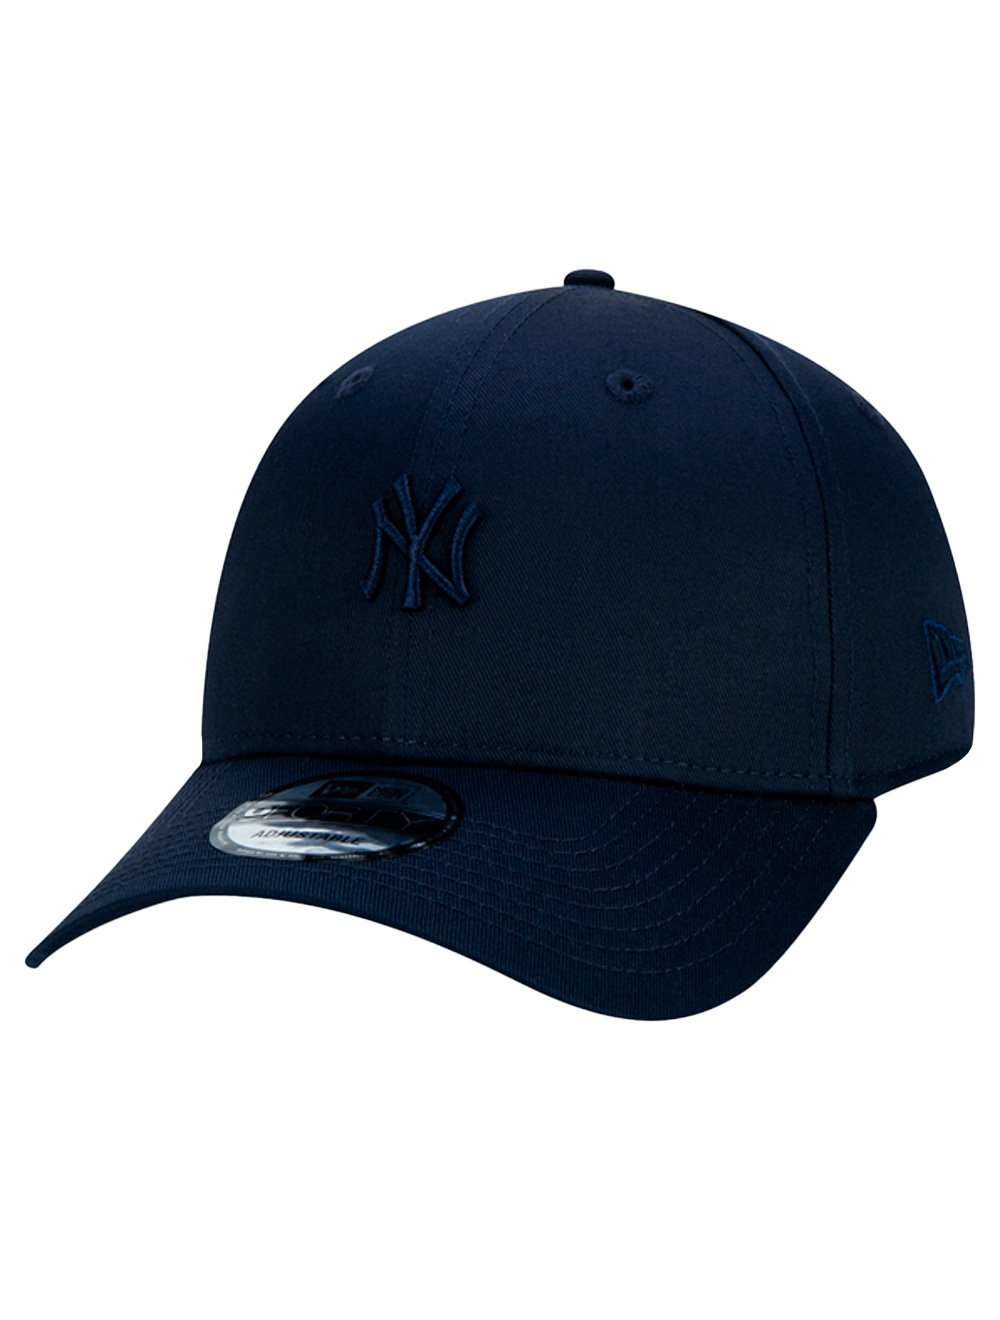 Boné New Era 9Forty MLB New York Yankees Mini Navy Logo NY Azul Marinho